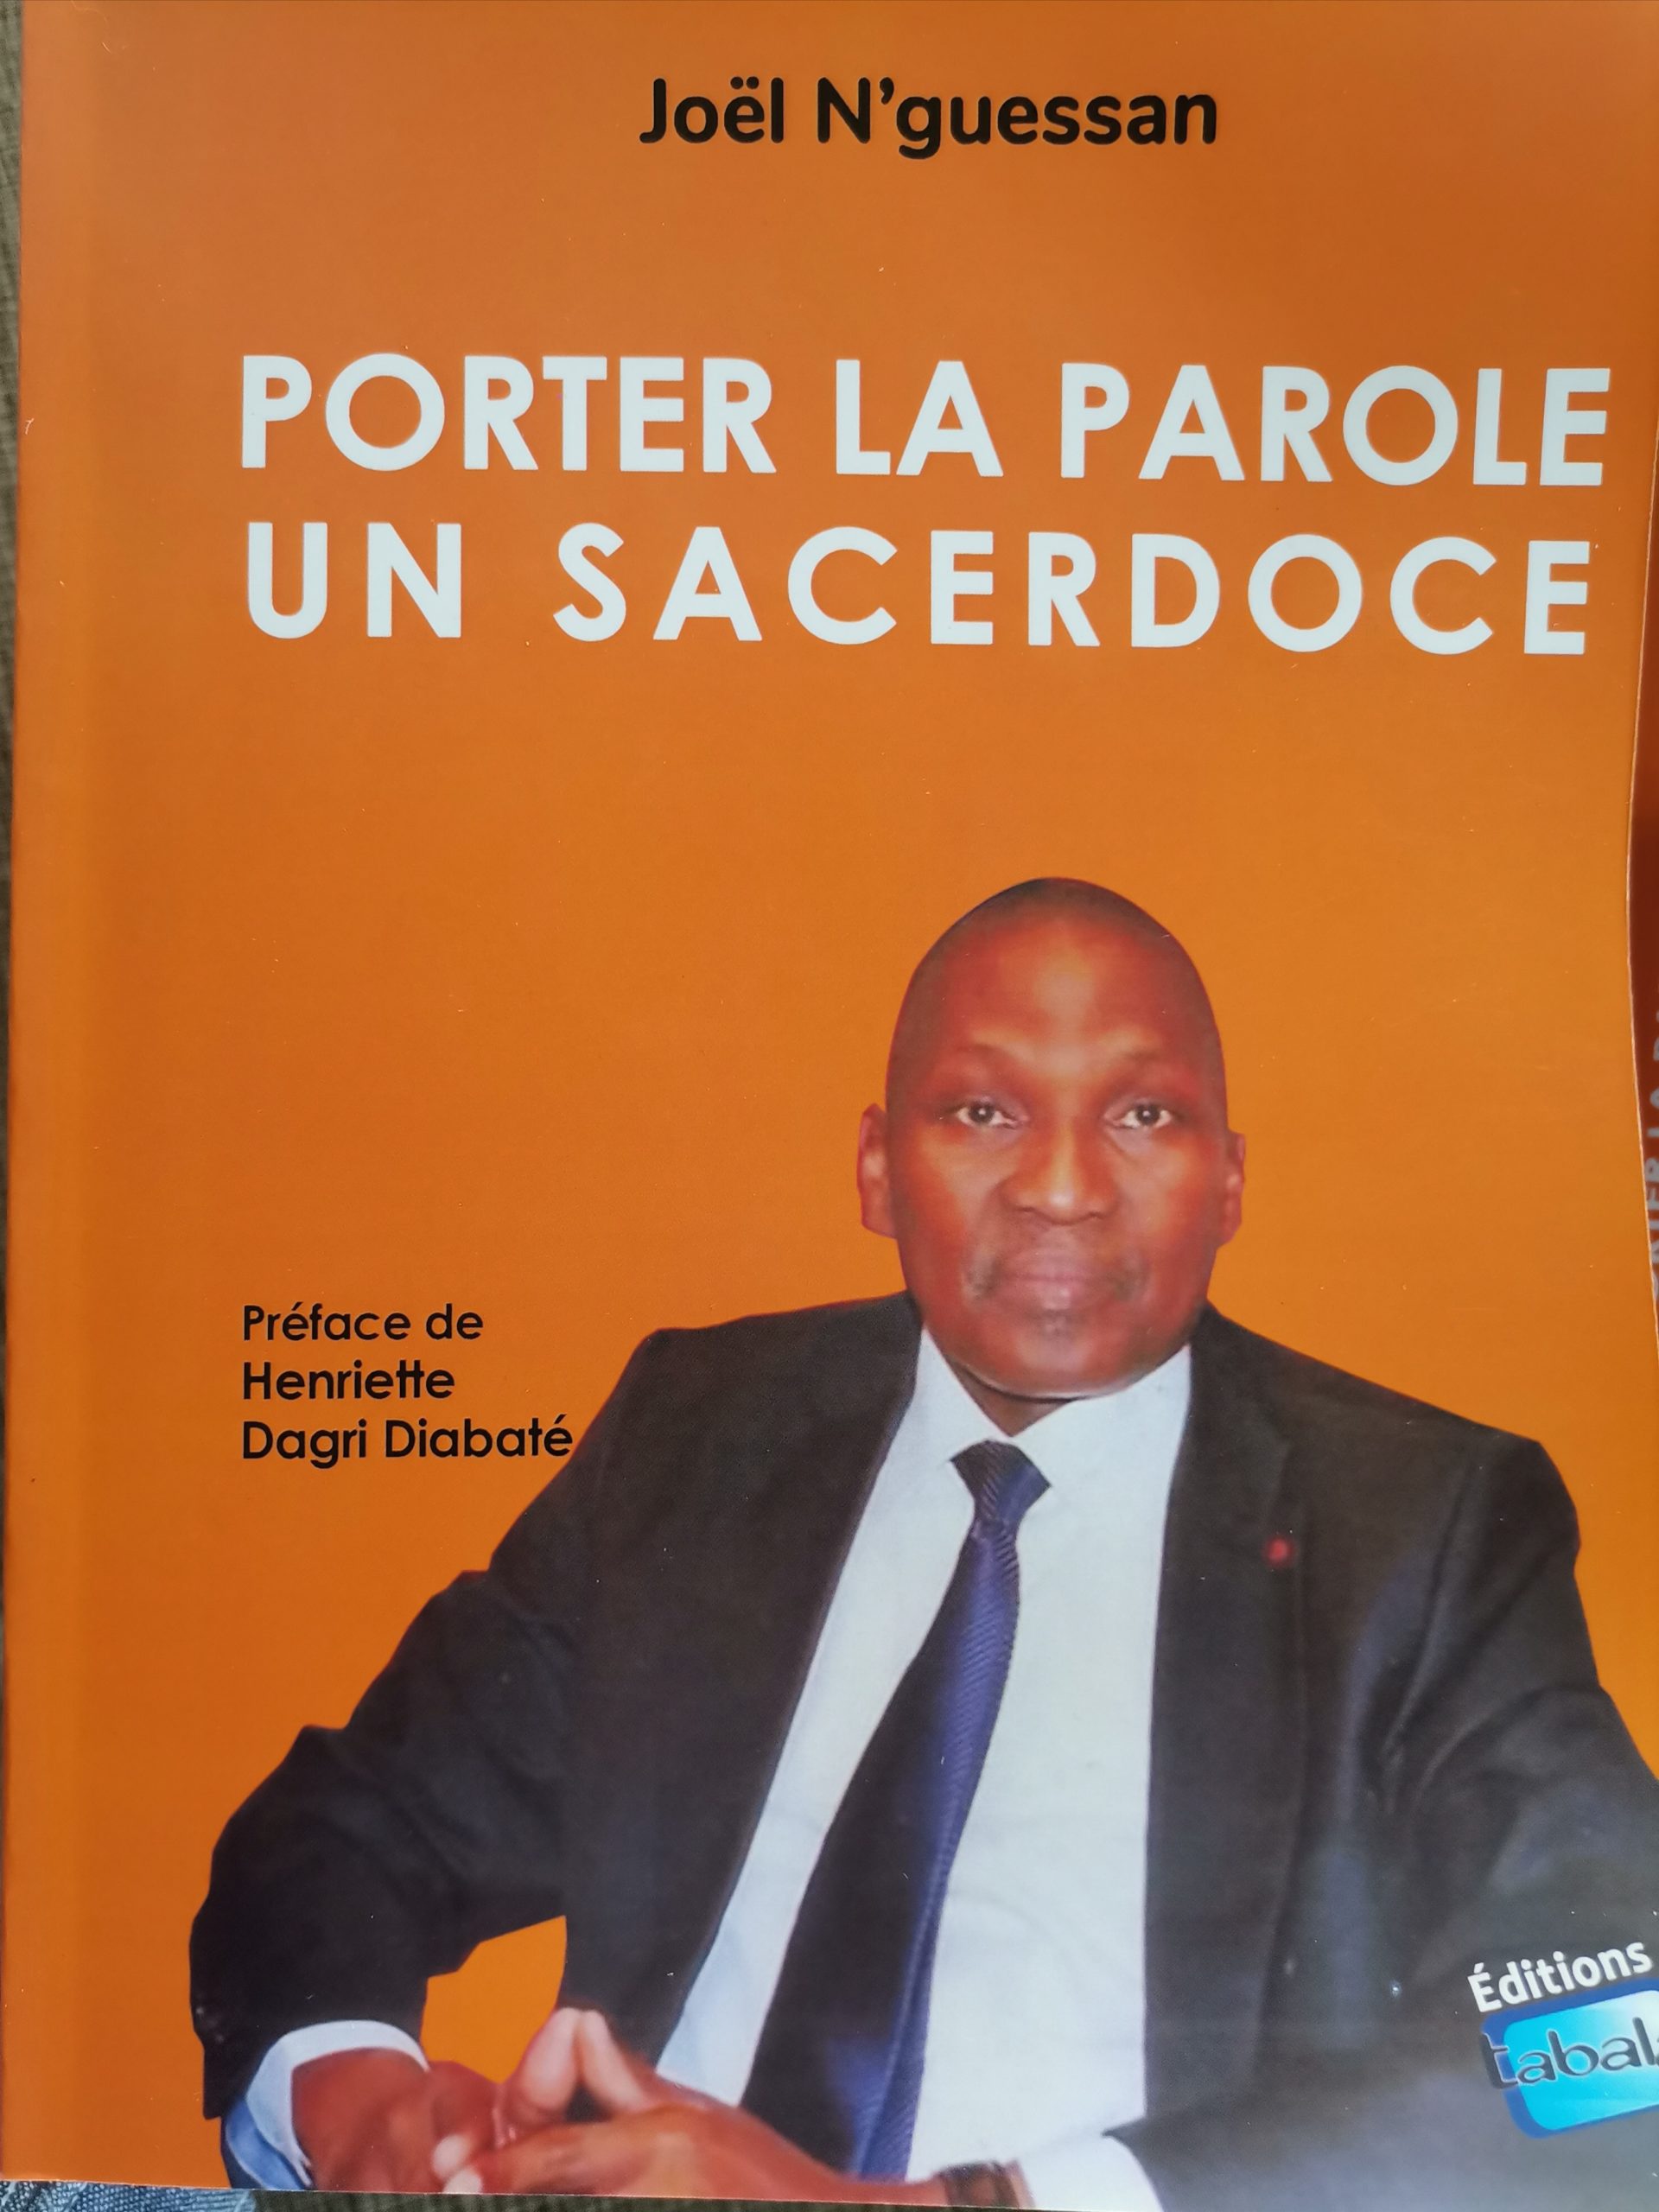 Le Ministre Joël N’guessan présente son œuvre  « Porter la parole , un sacerdoce »  des éditions Tabalâ